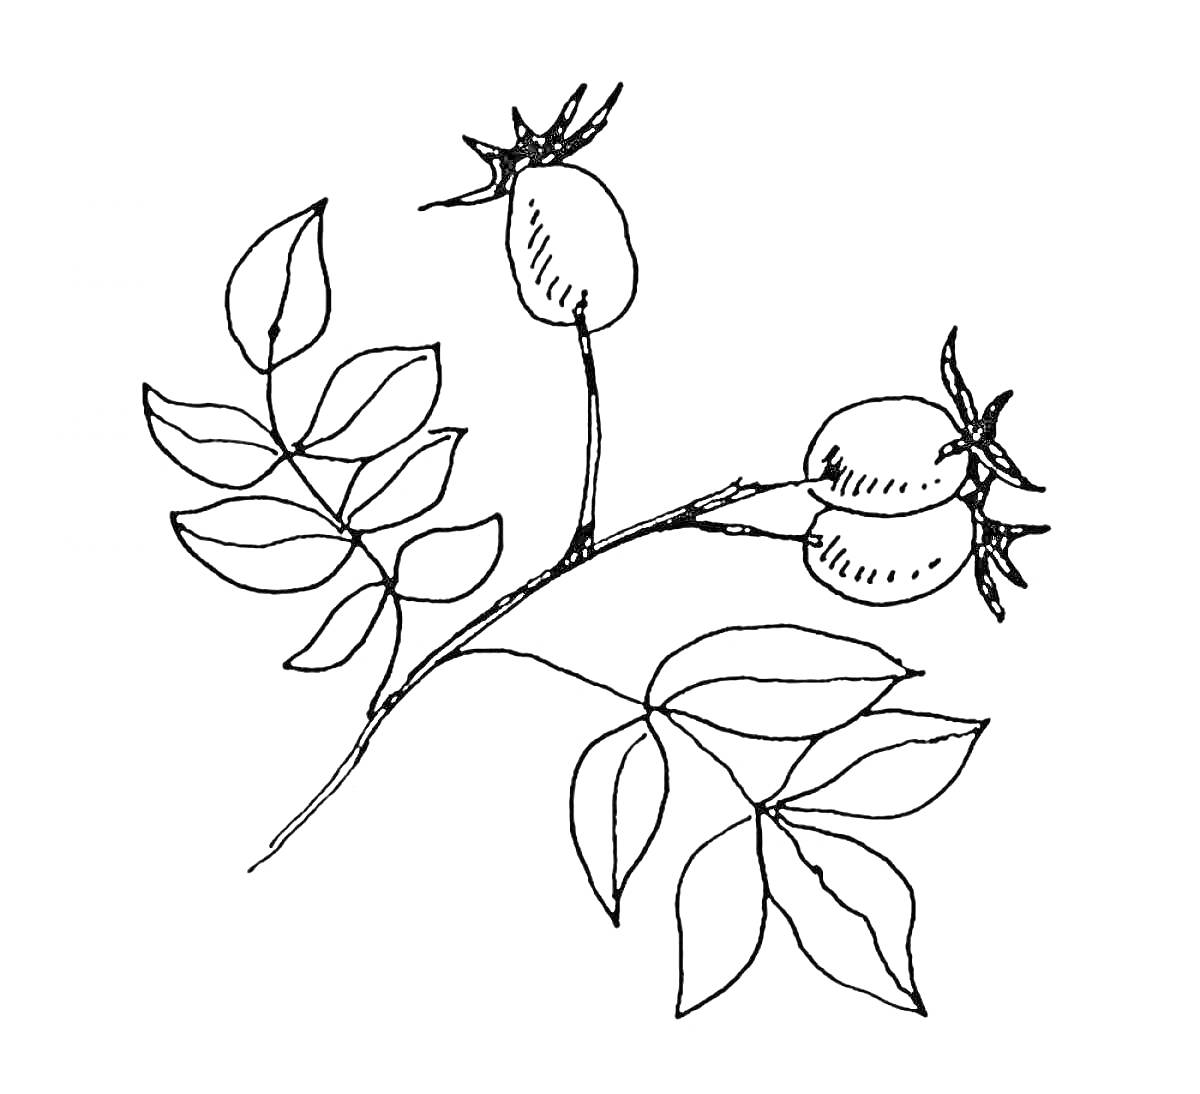 Раскраска Ветвь шиповника с листьями и двумя ягодами